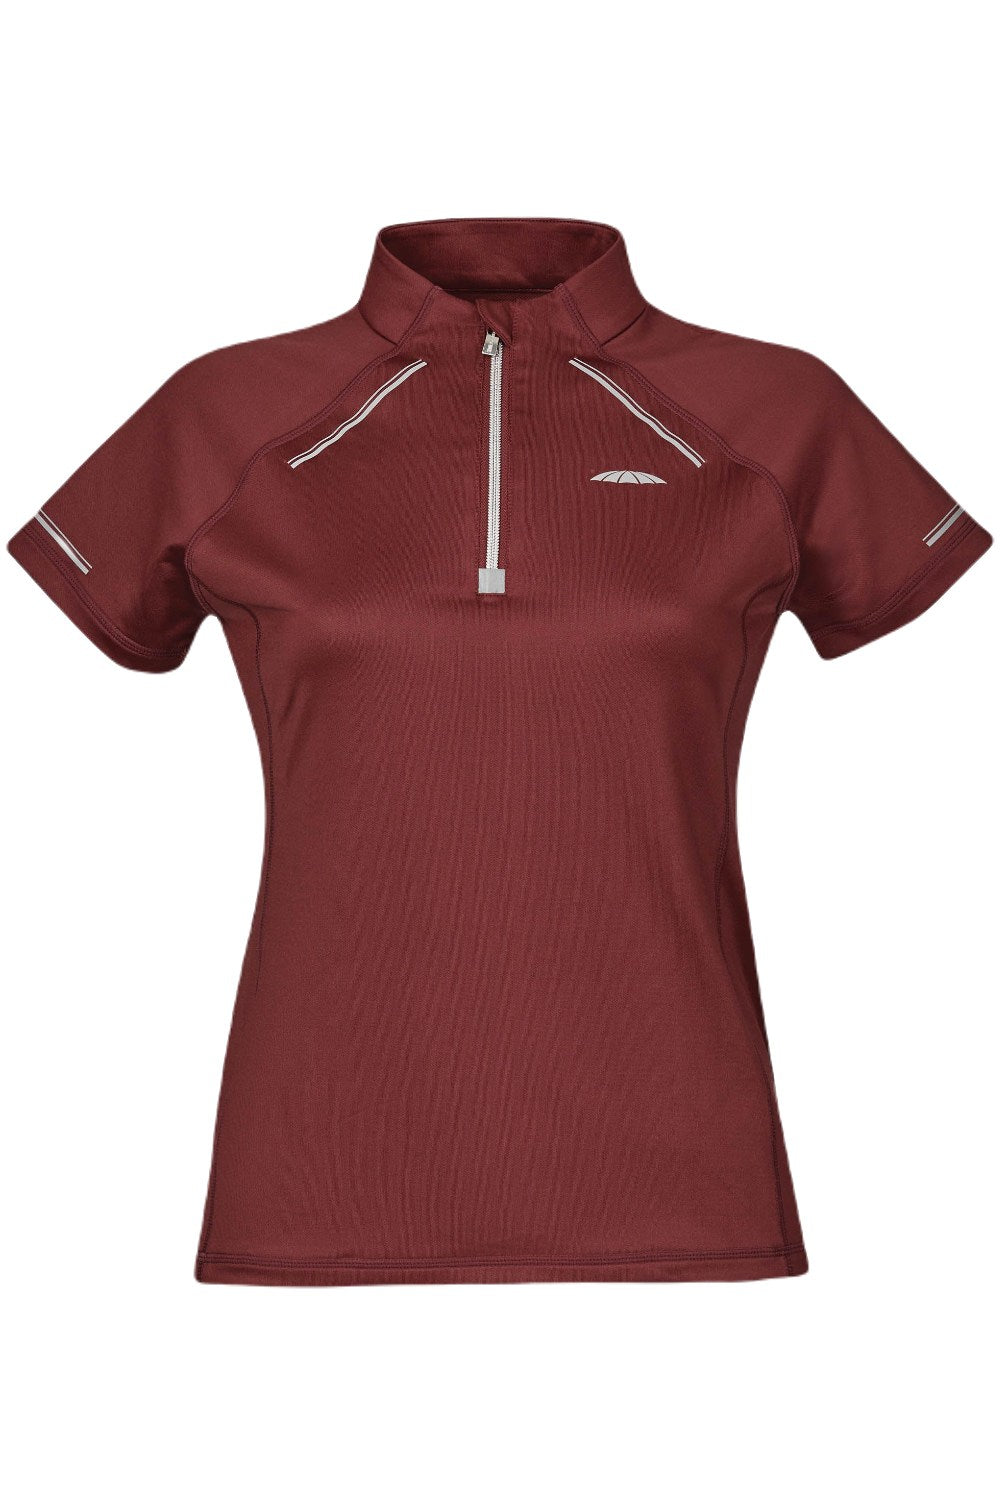 Weatherbeeta Victoria Premium Short Sleeve Top in Maroon 